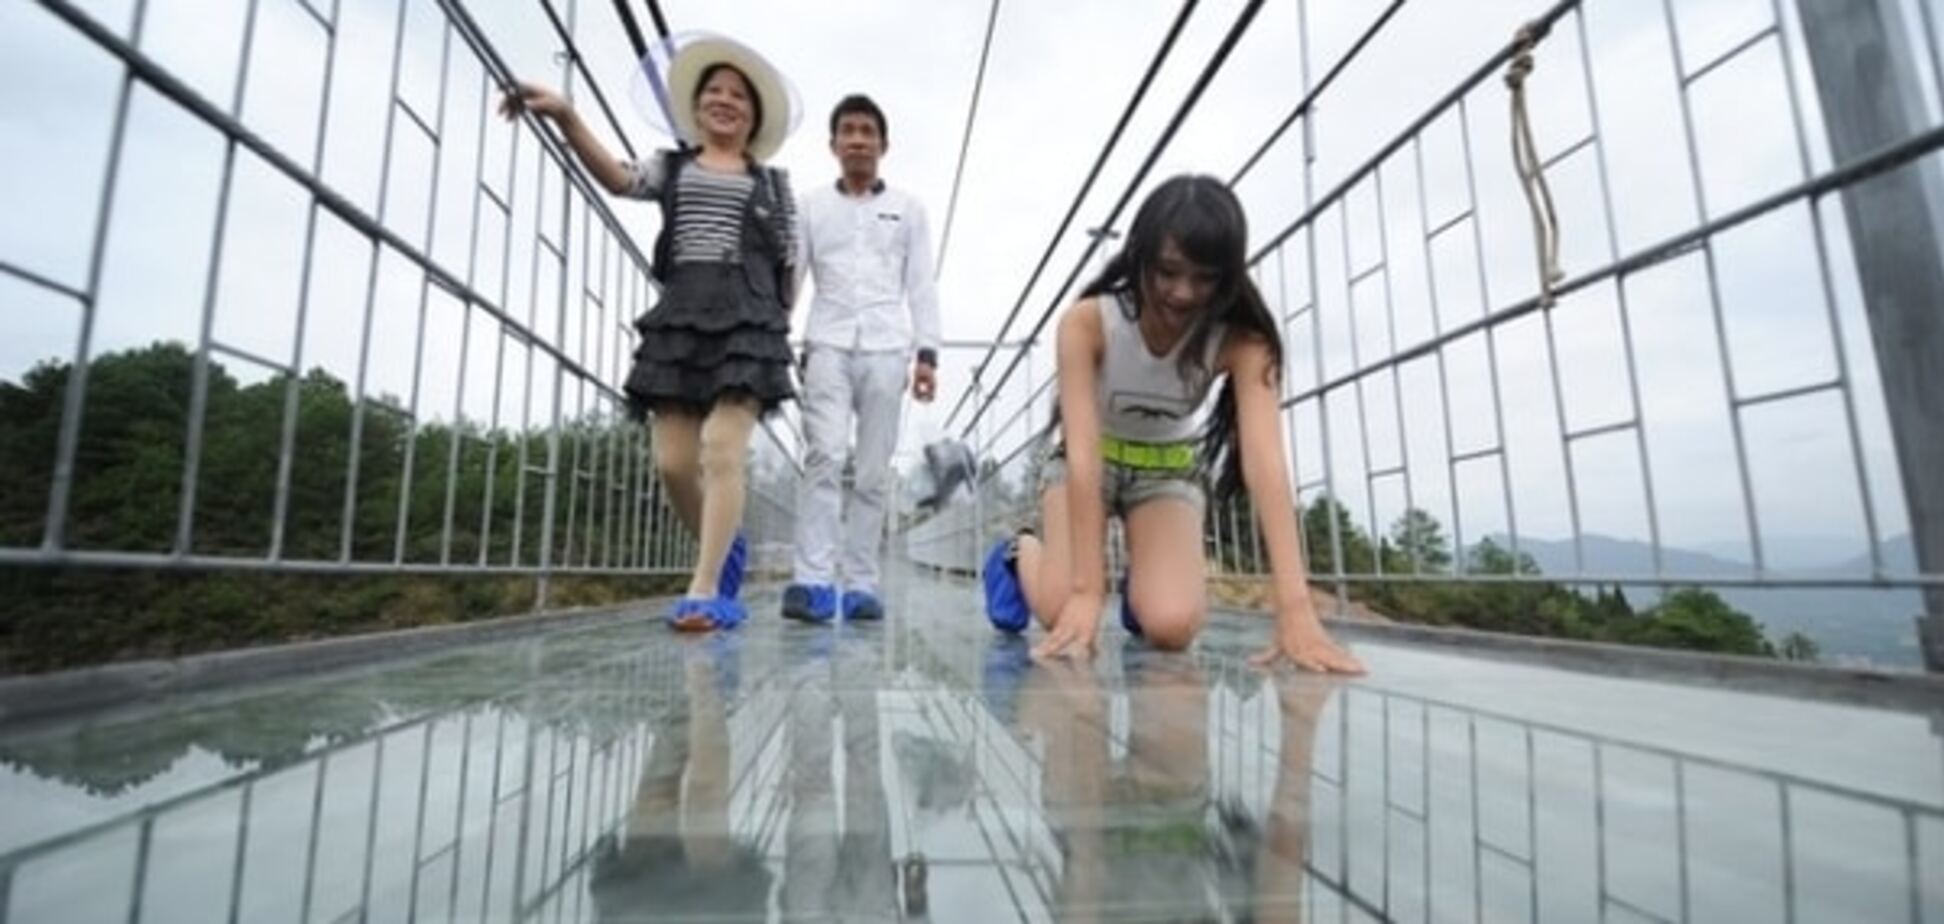 Слабо? Туристи жахнулися від скляного моста в Китаї